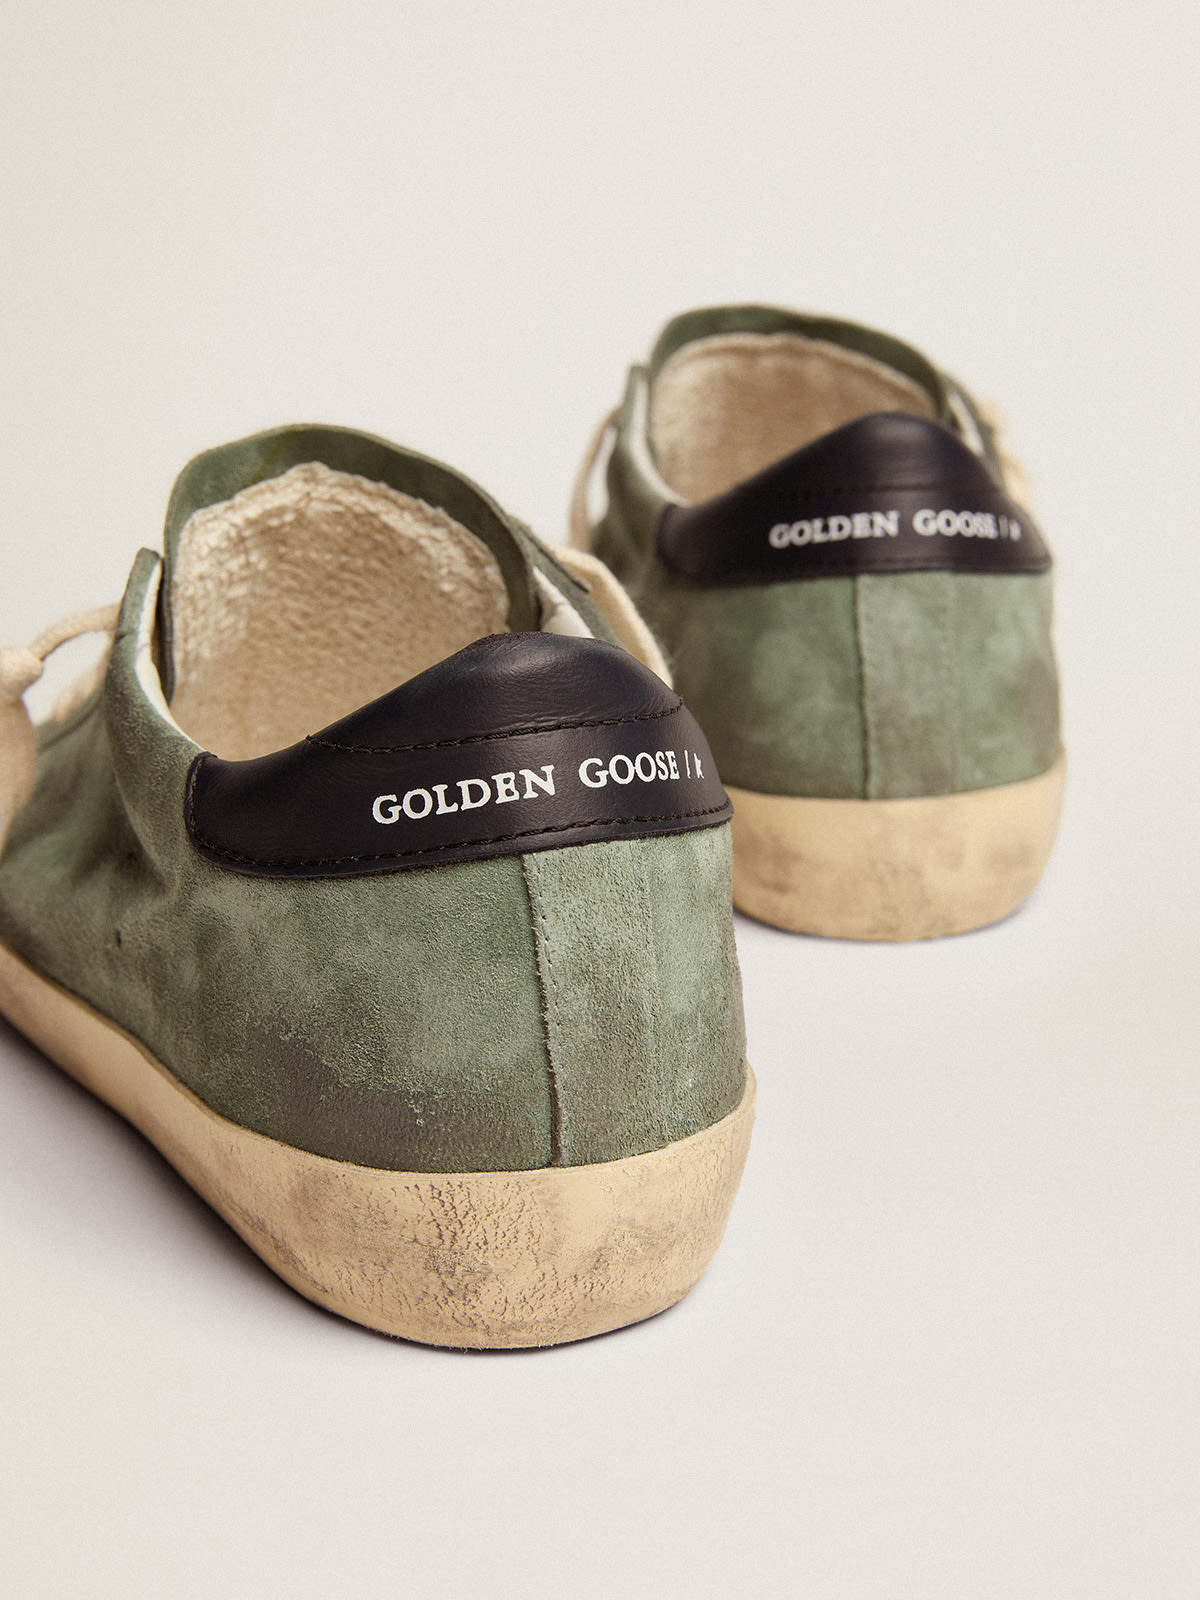 Golden Goose - Sneaker Super-Star in suede color verde militare con stella traforata e talloncino in pelle color blu scuro in 